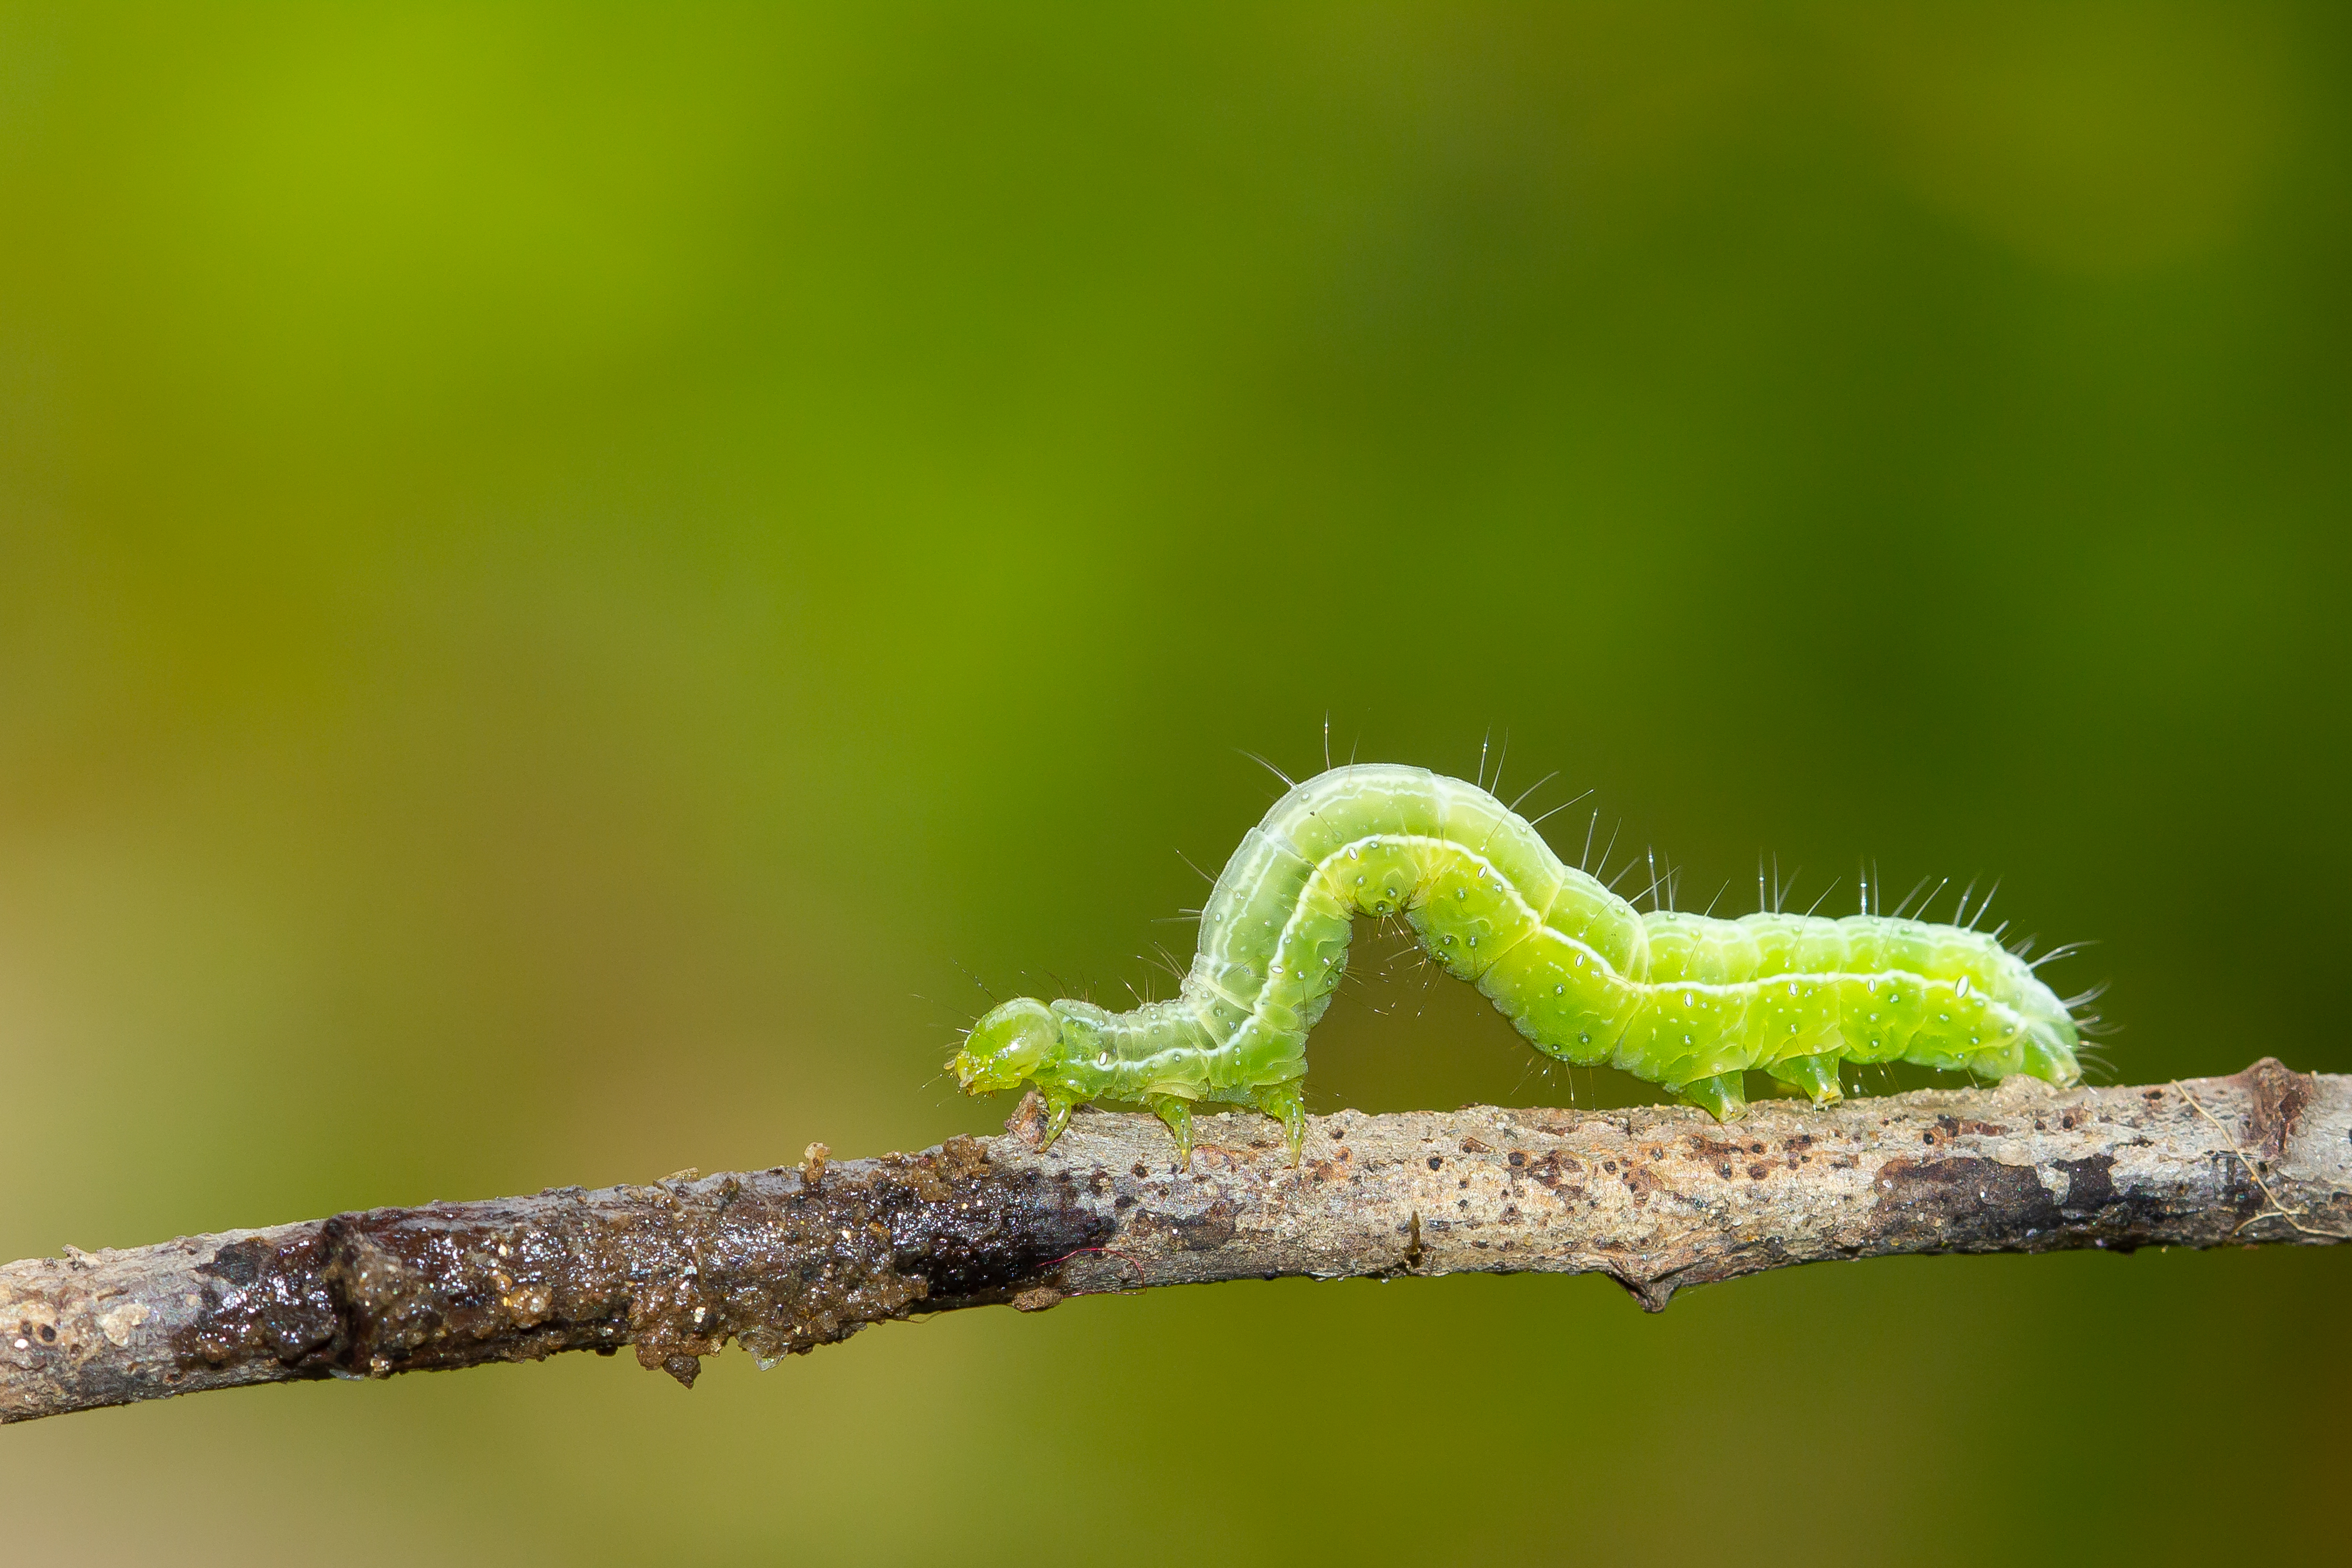 Green caterpillar on a brown branch